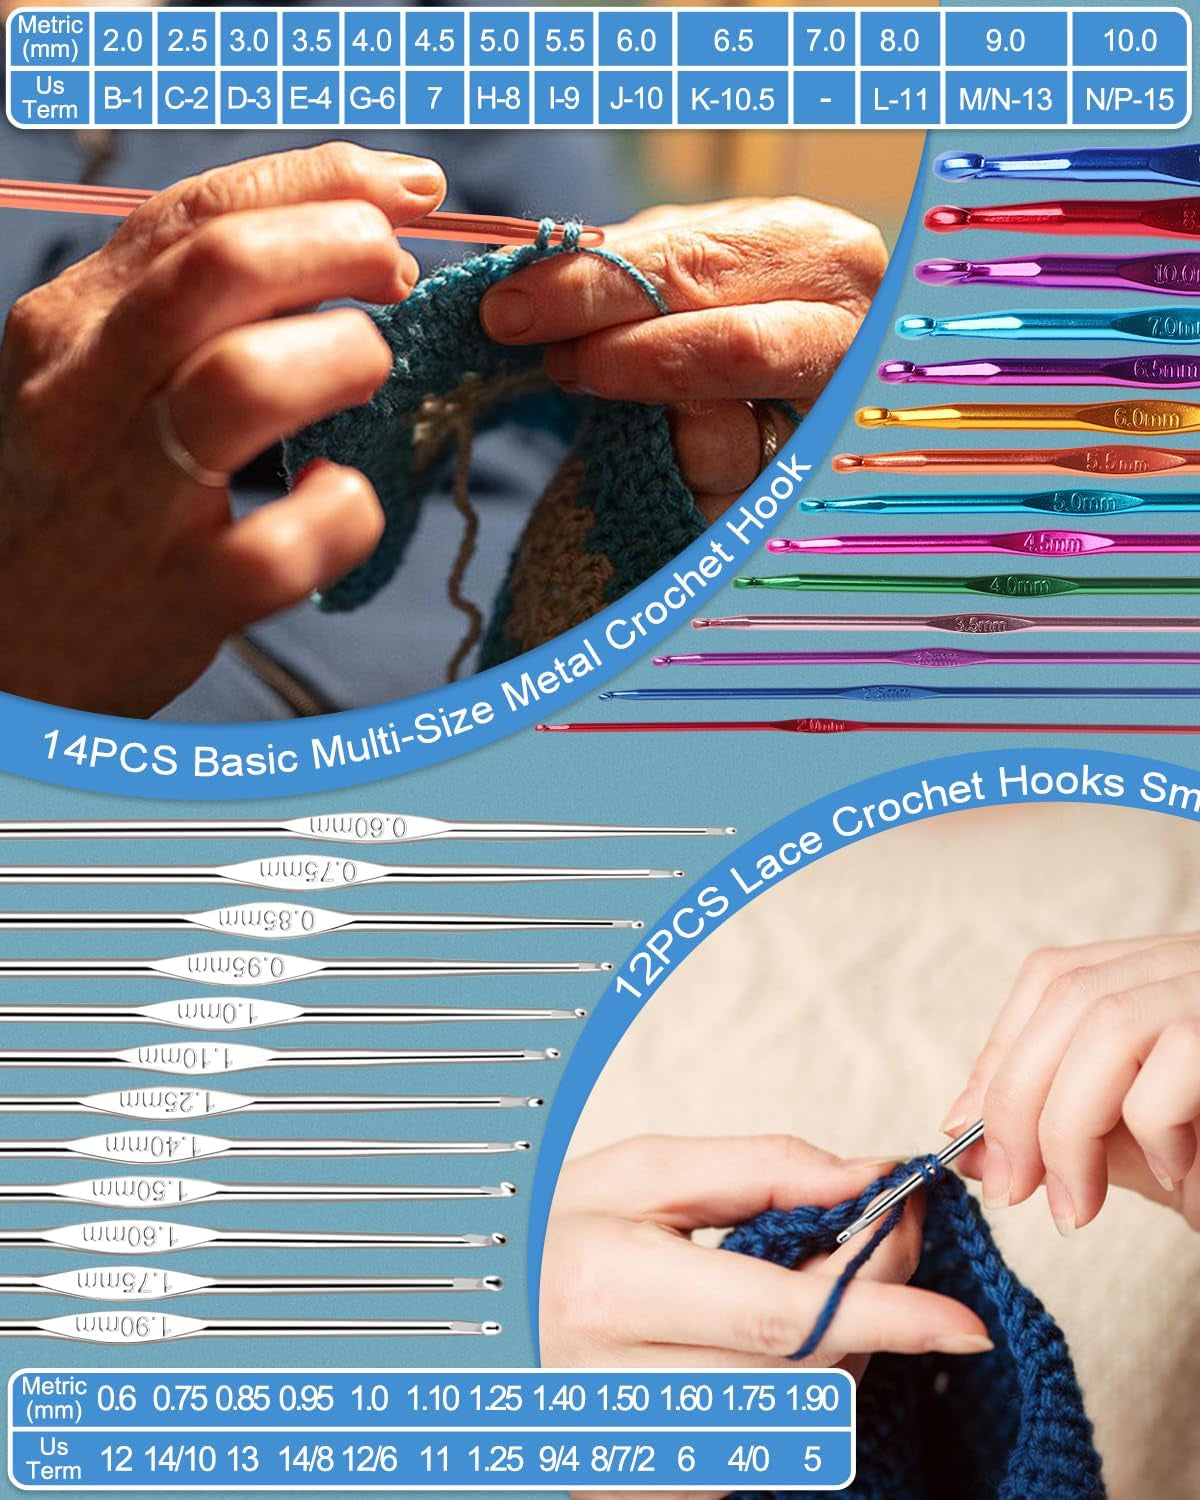 Knitting Needles Set 86PCS Knitting Kit for Beginners, Crochet Knitting Start Set Includes 9.8" Bamboo Knitting Needle Set (2-10Mm), Metal Crochet Hooks Set (0.6-10Mm) & Crochet Accessories